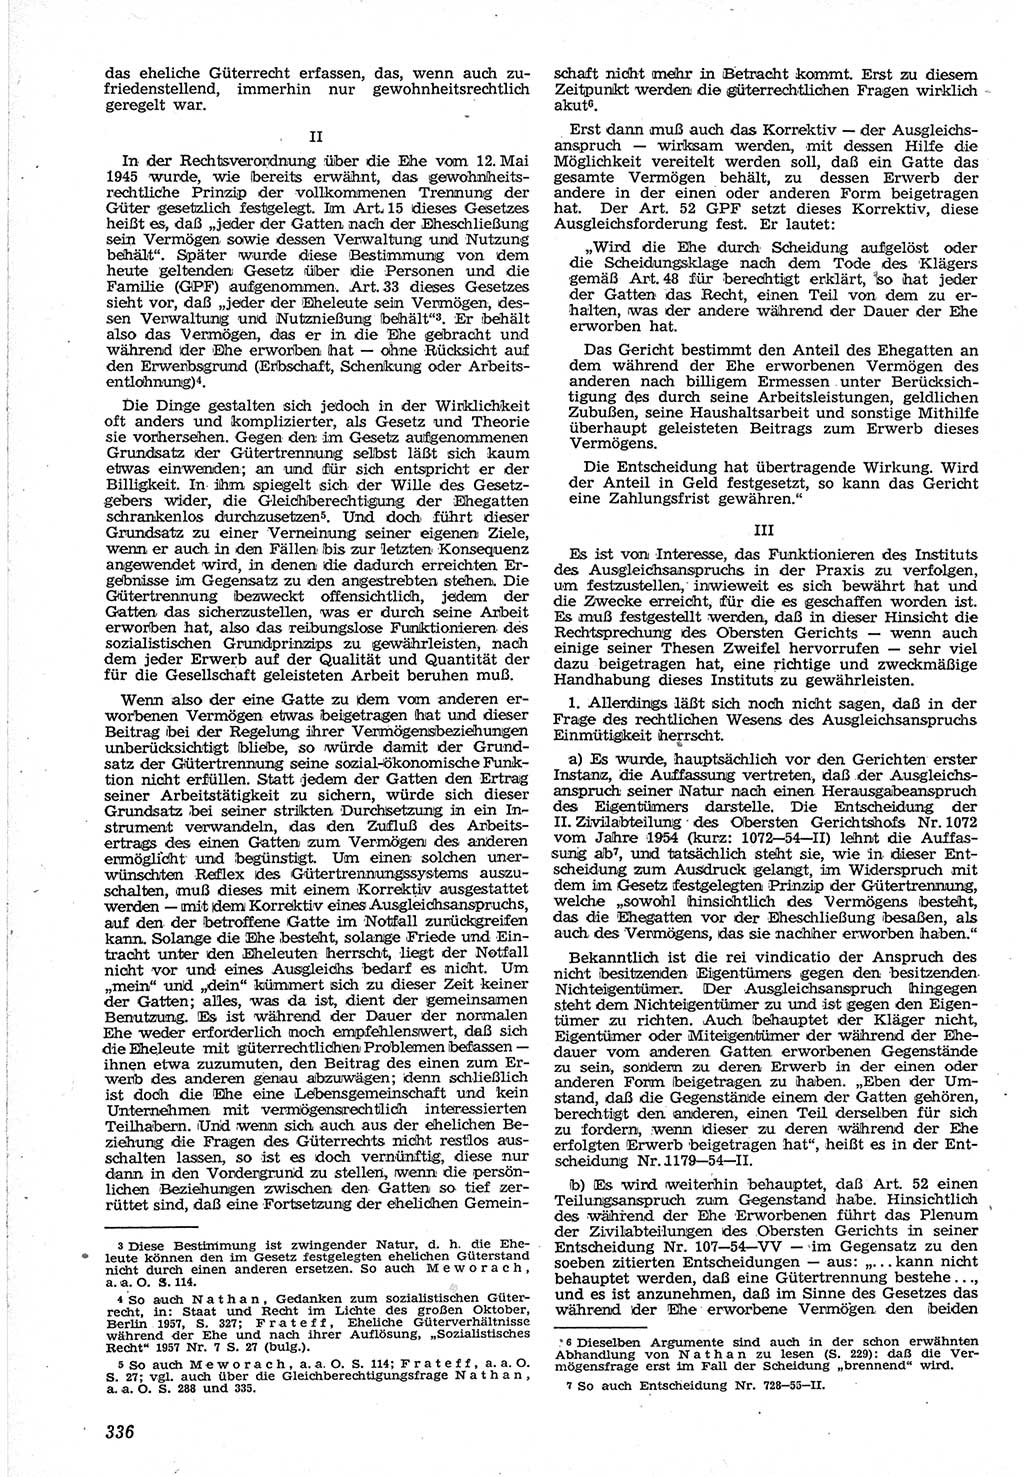 Neue Justiz (NJ), Zeitschrift für Recht und Rechtswissenschaft [Deutsche Demokratische Republik (DDR)], 12. Jahrgang 1958, Seite 336 (NJ DDR 1958, S. 336)